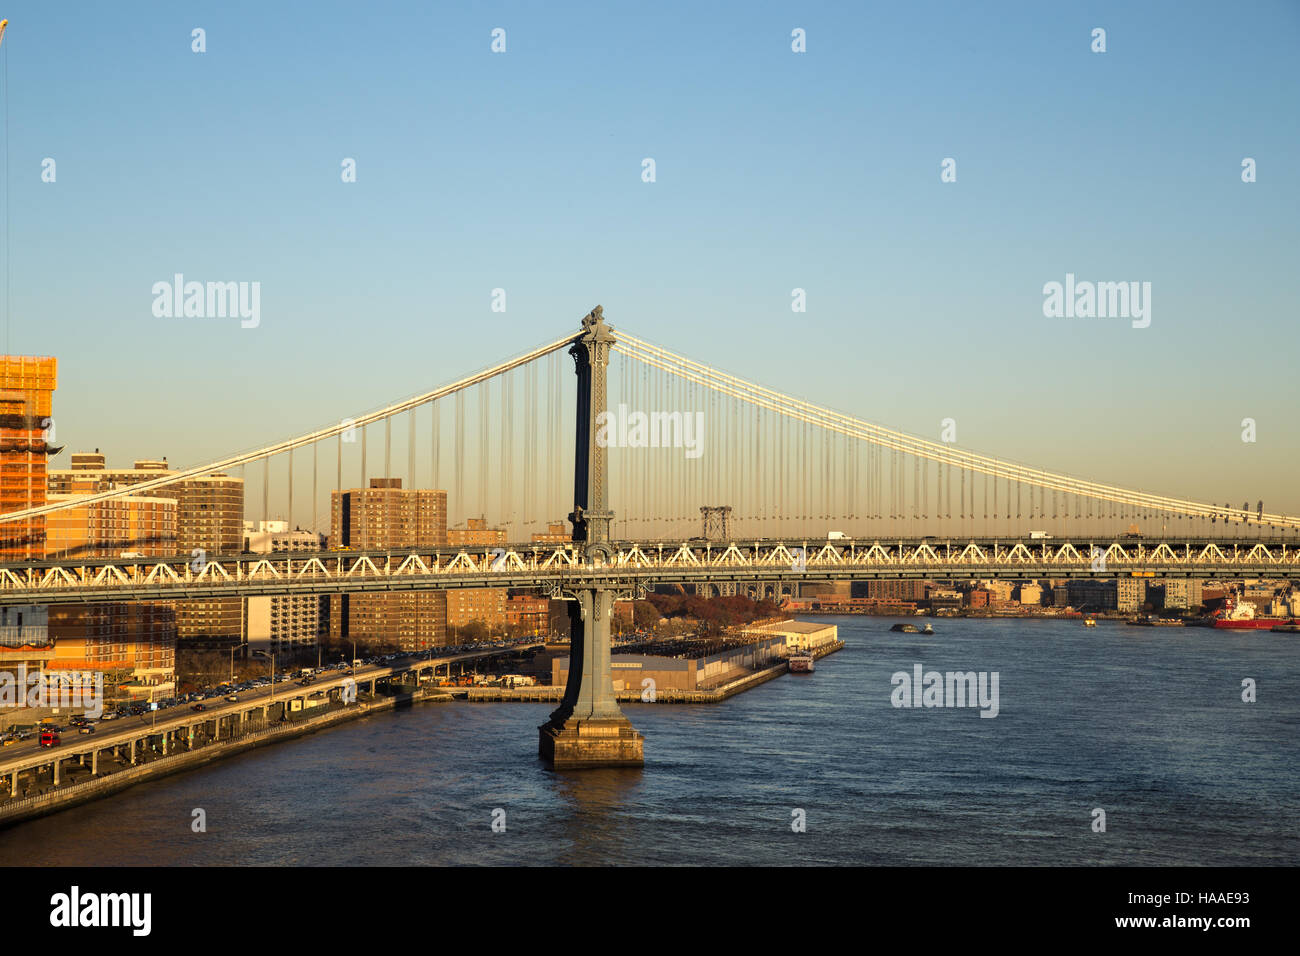 One of the pillars of Manhattan Bridge in New York City Stock Photo